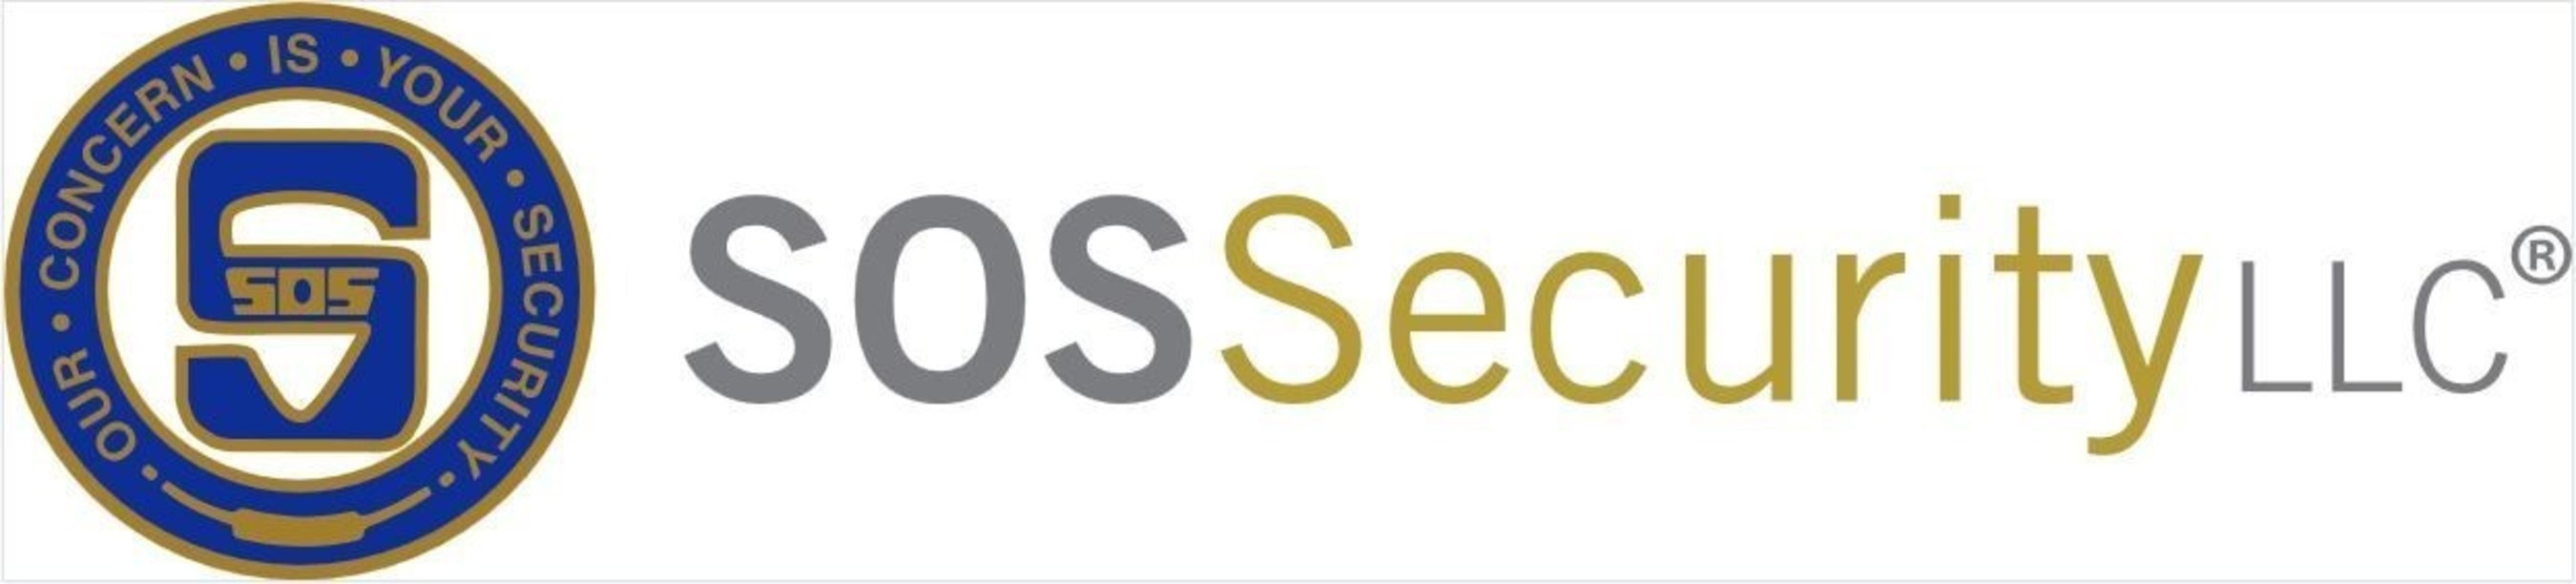 www.sossecurity.com